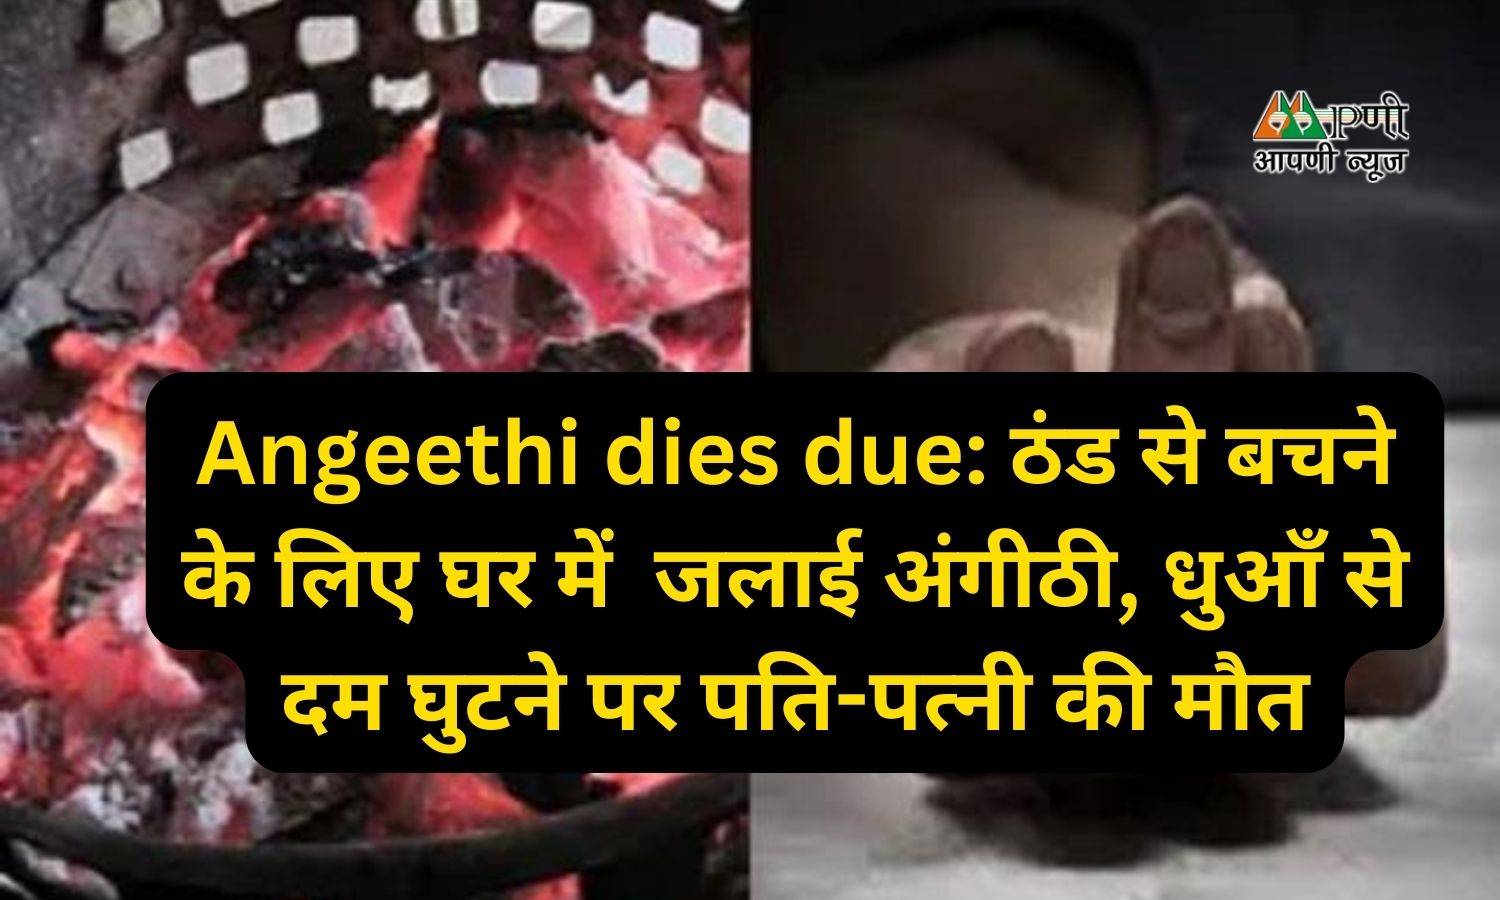 Angeethi dies due: ठंड से बचने के लिए घर में  जलाई अंगीठी, धुआँ से दम घुटने पर पति-पत्नी की मौत